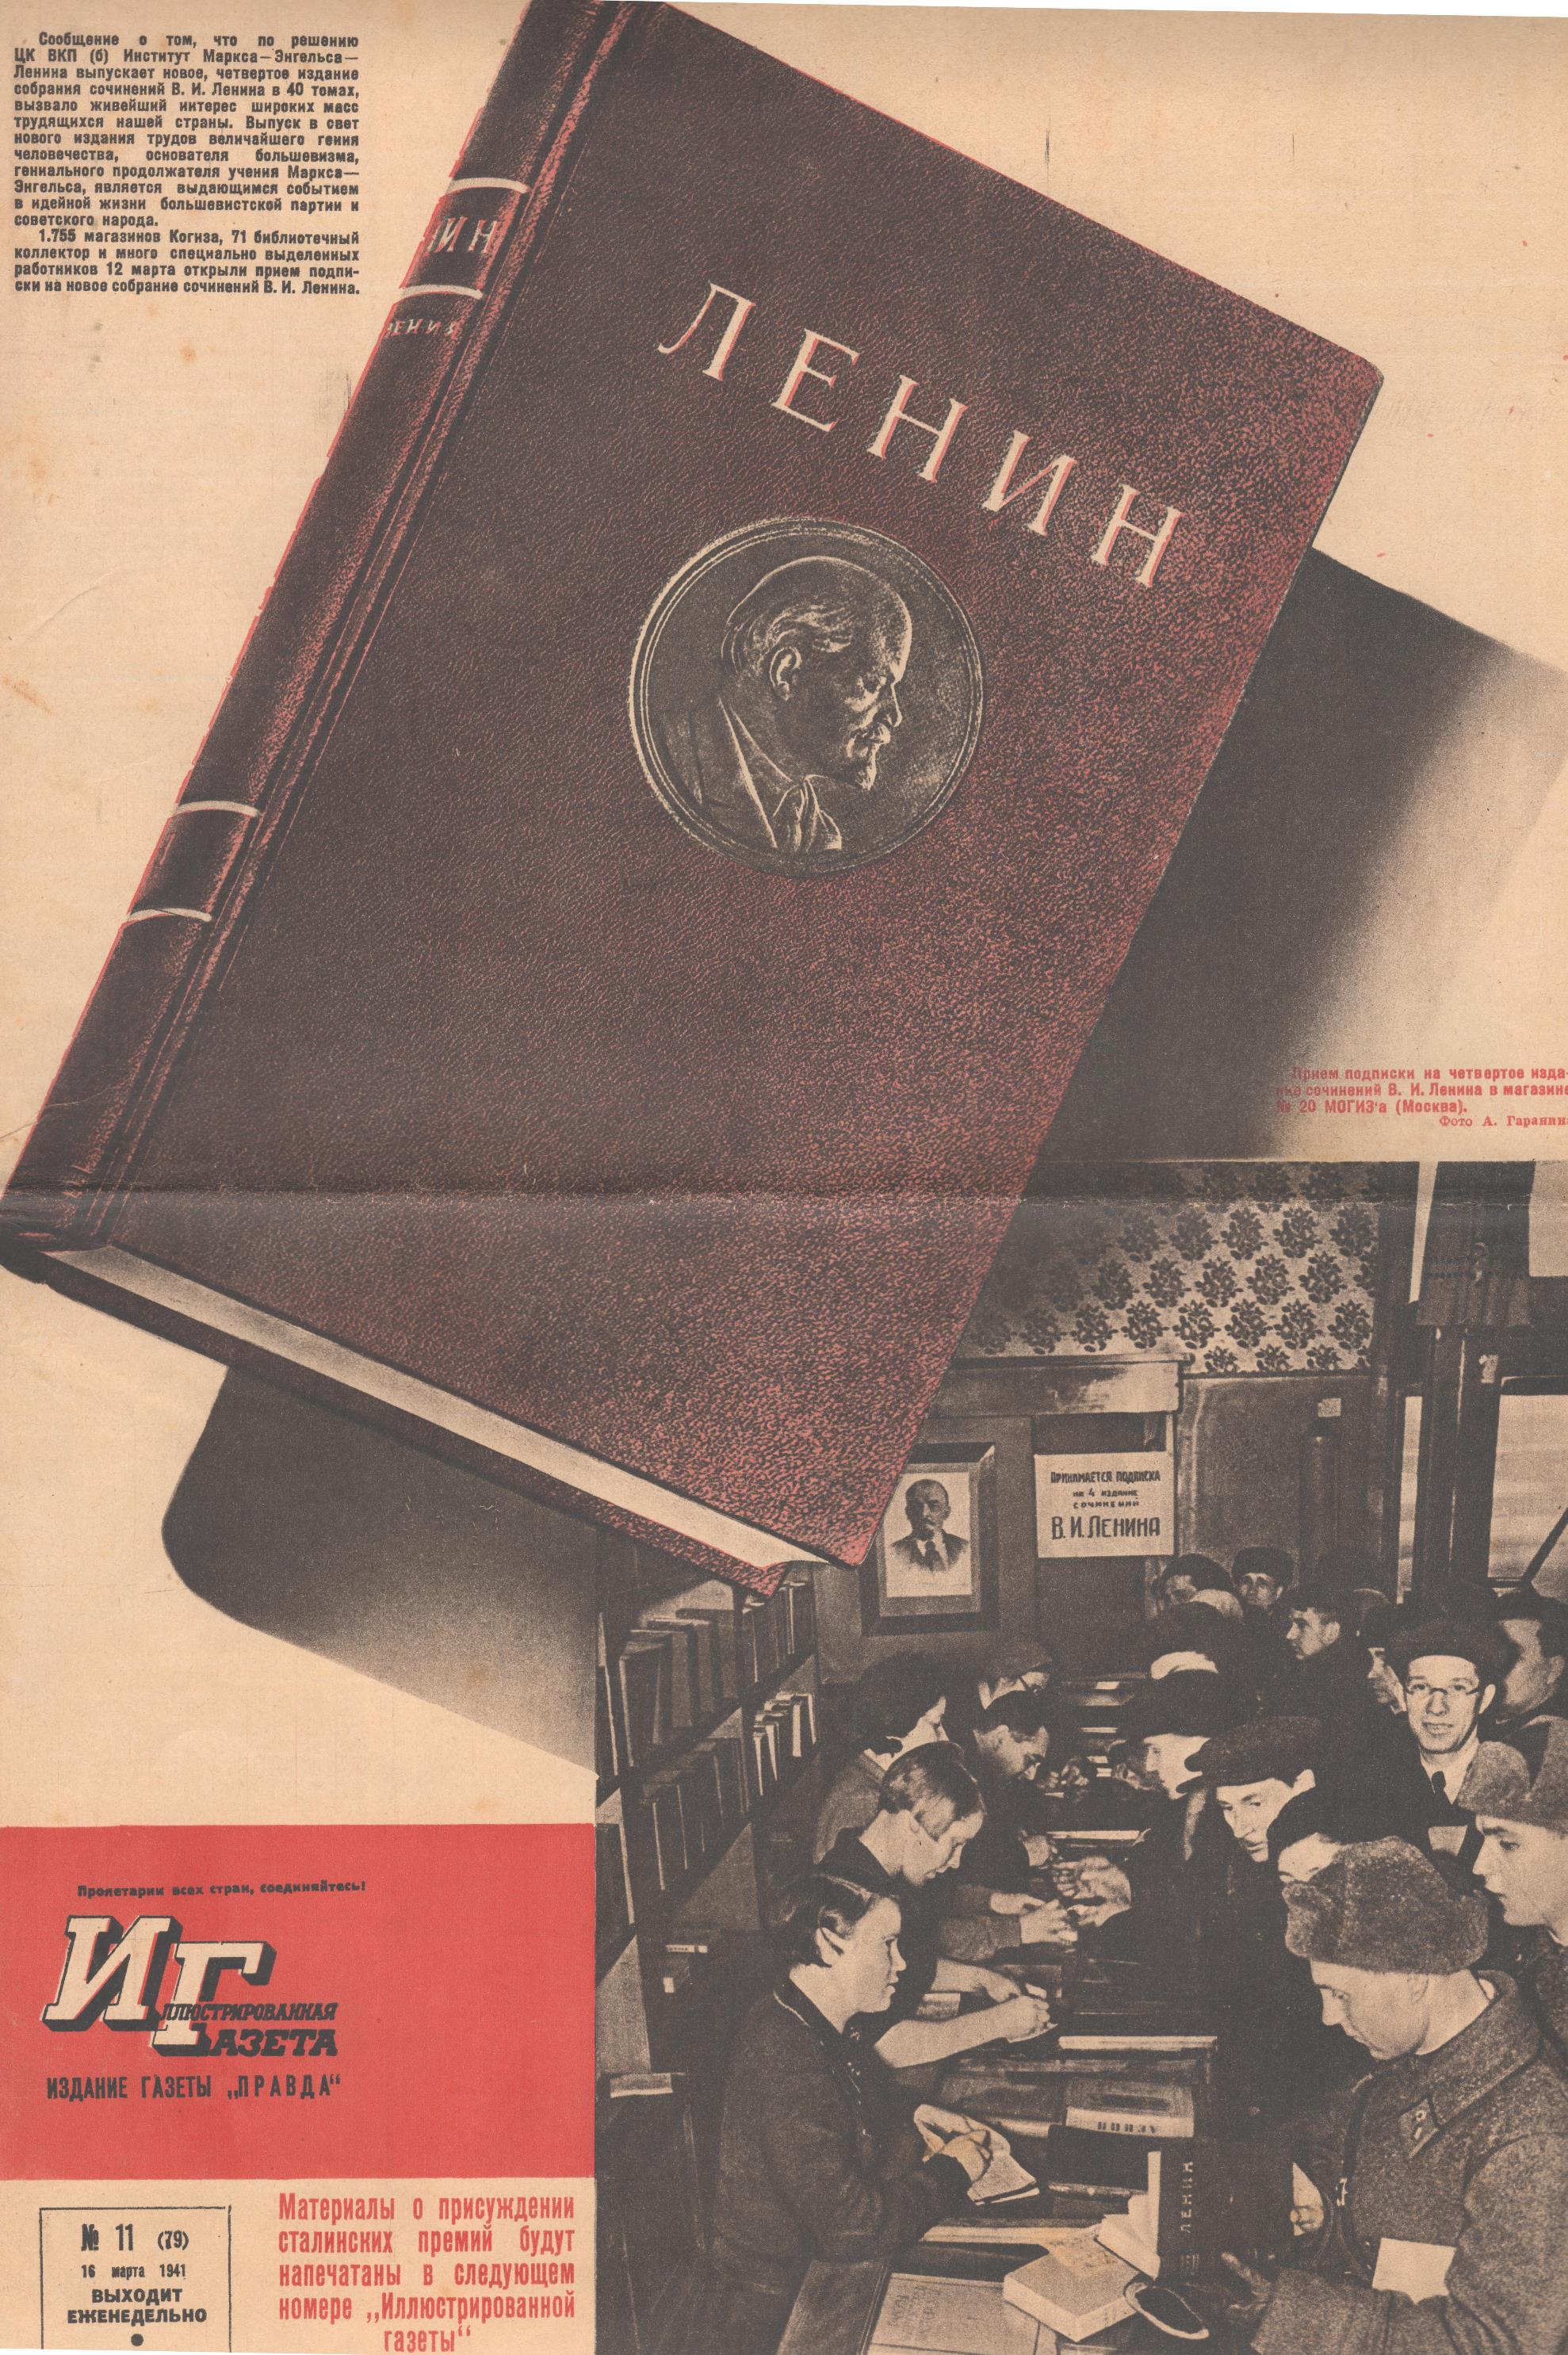 Журнал "Красноармейская иллюстрированная газета". № 11 (травень). 1941